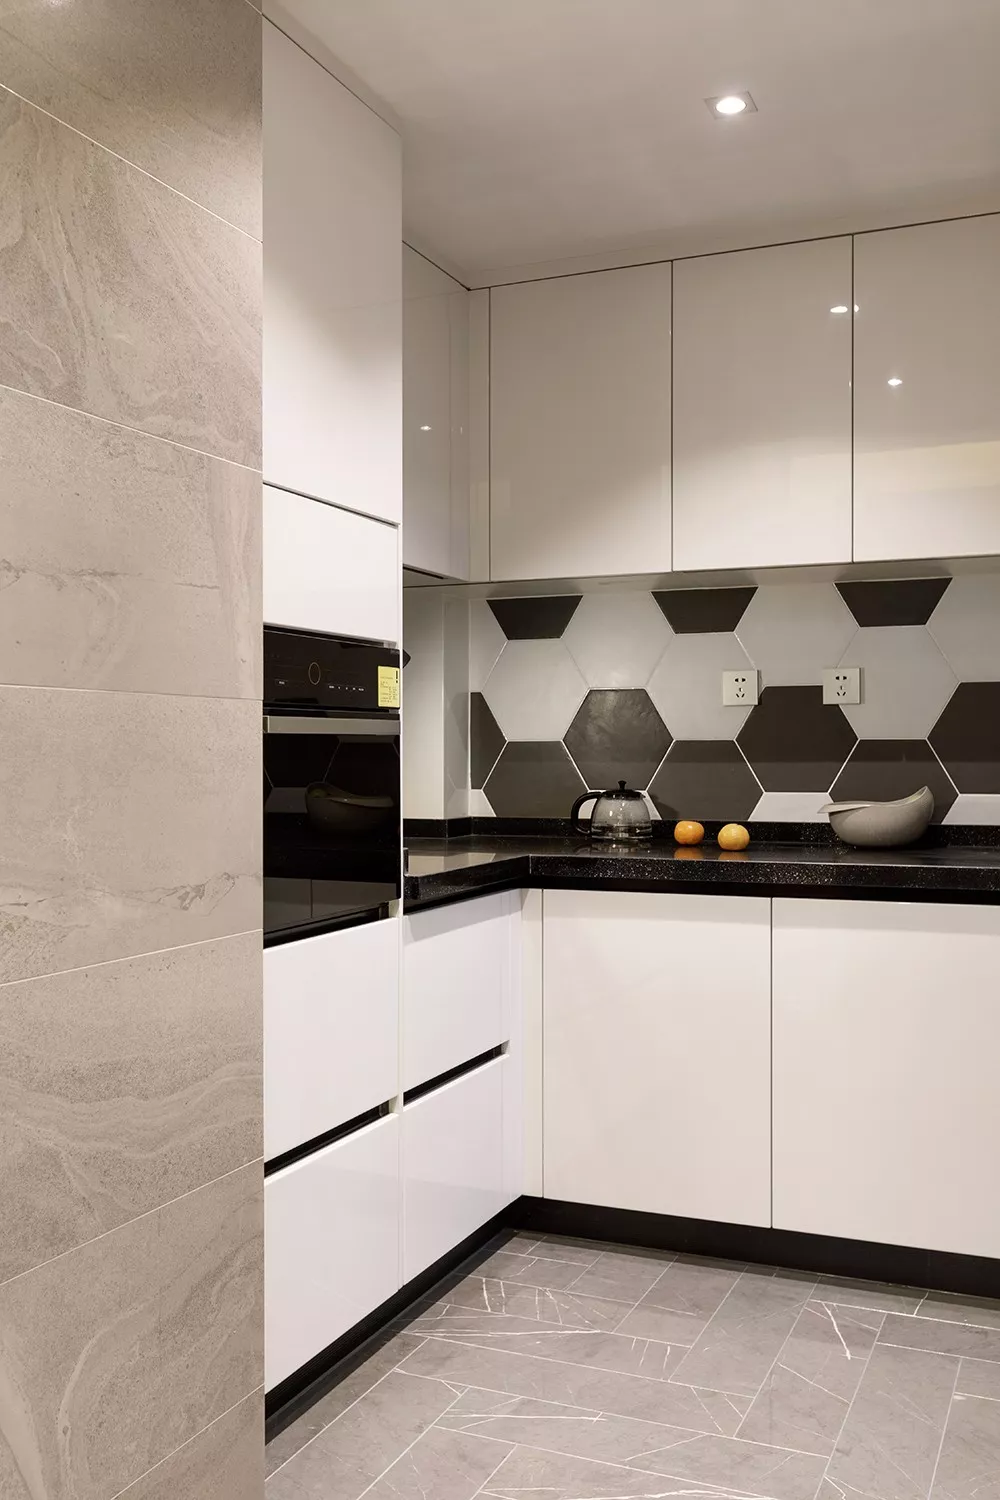 u字形的厨房,在灰色地砖与墙面基础,搭配白色橱柜,黑色台面,显得